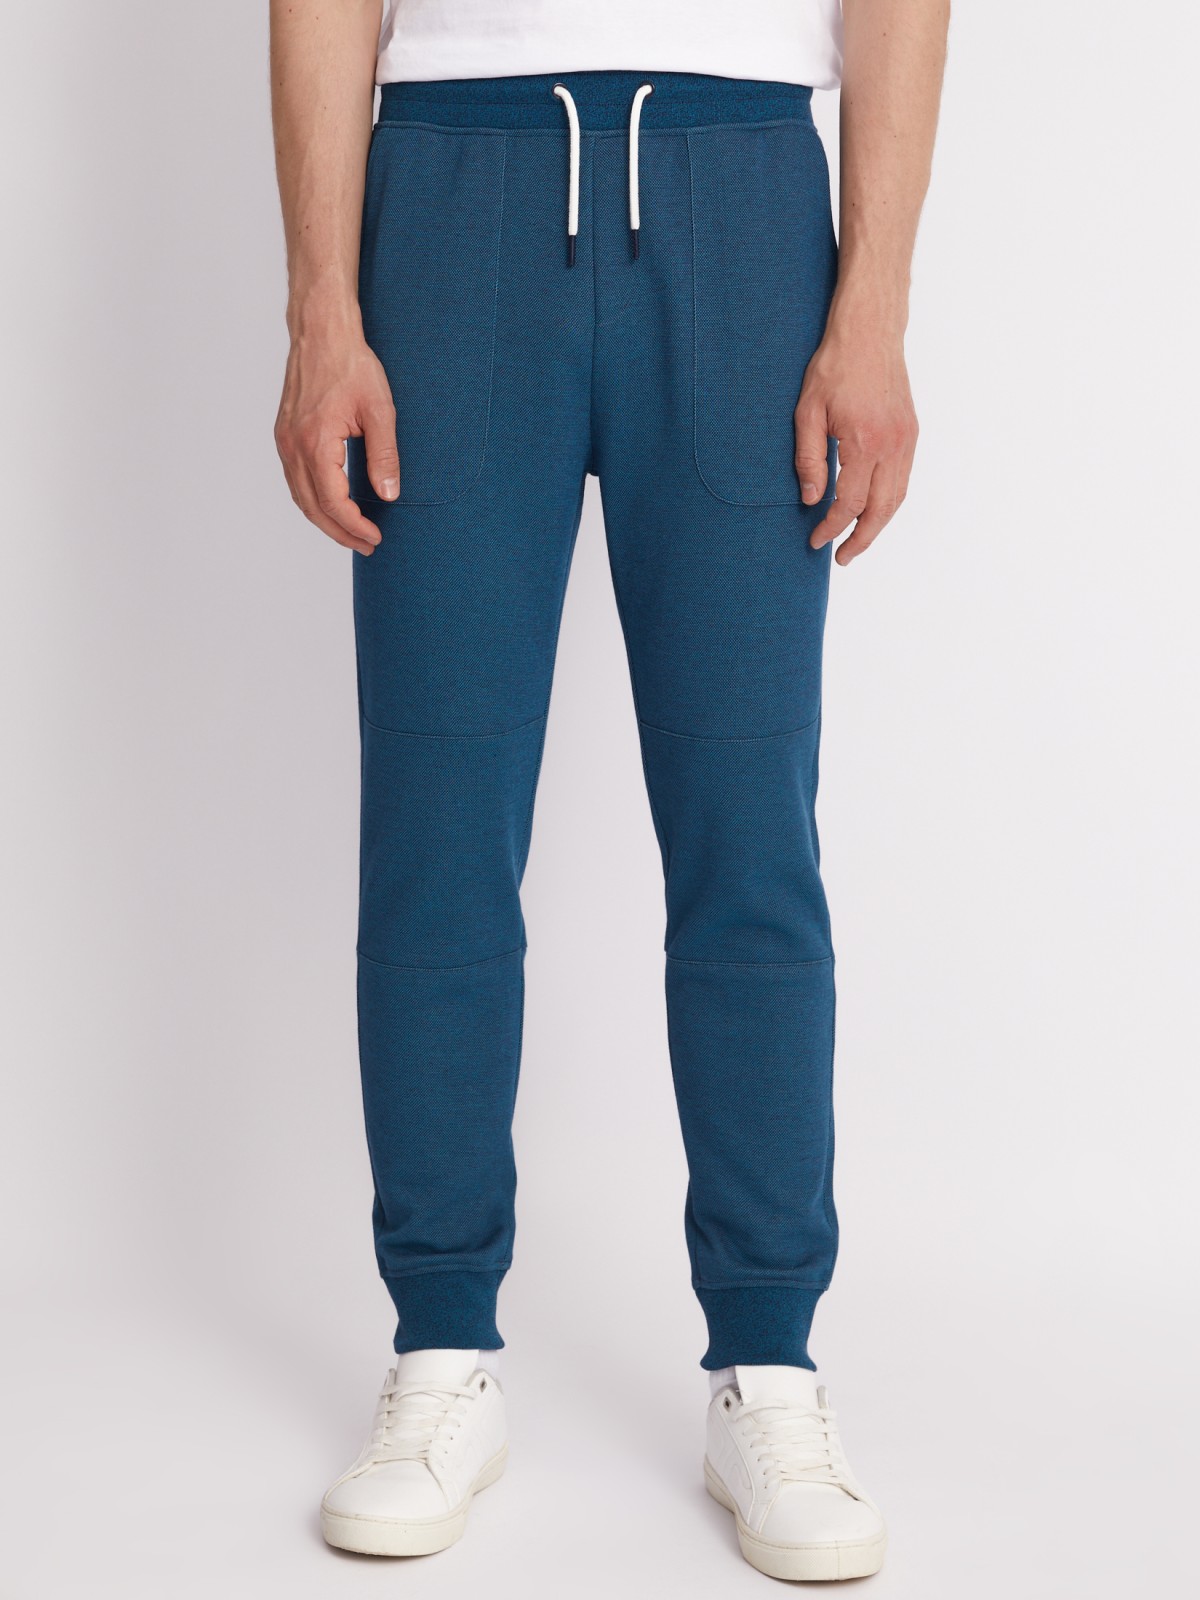 Трикотажные брюки-джоггеры в спортивном стиле zolla 213317604053, цвет бирюзовый, размер S - фото 2